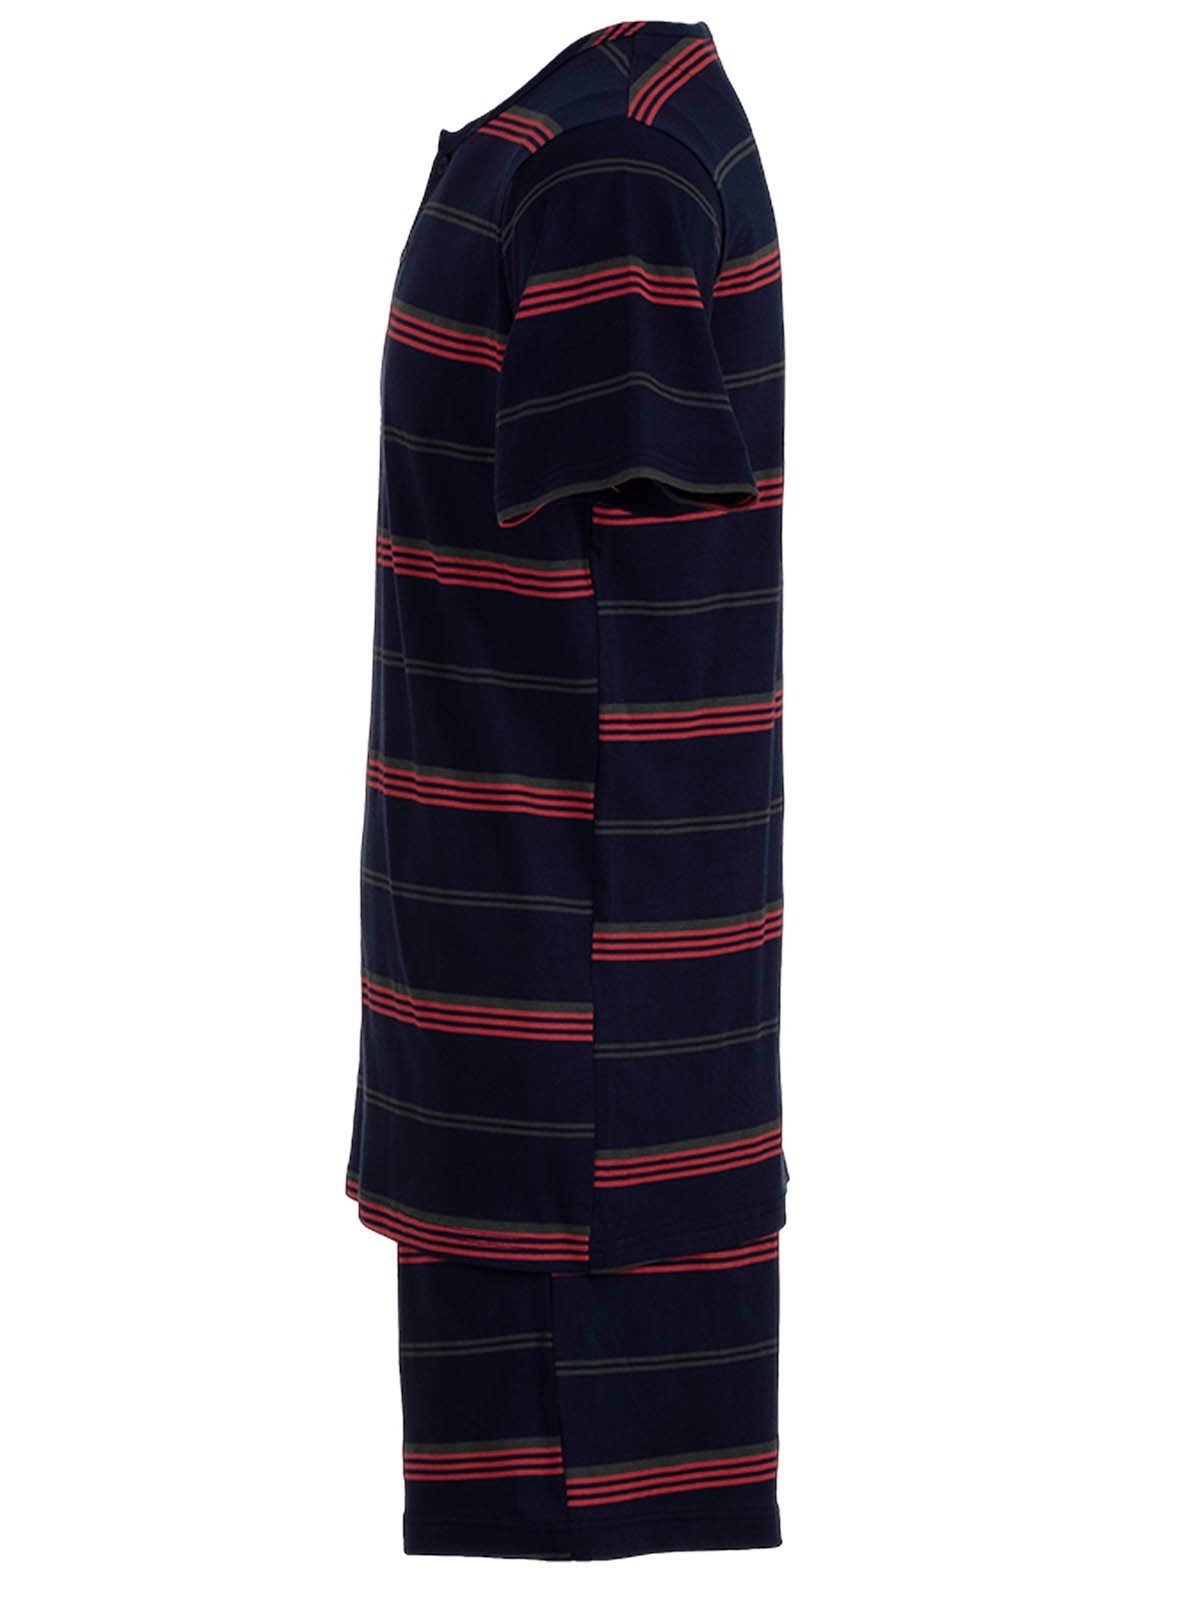 Pyjama Terre Streifen Henry - navy Set Schlafanzug Shorty